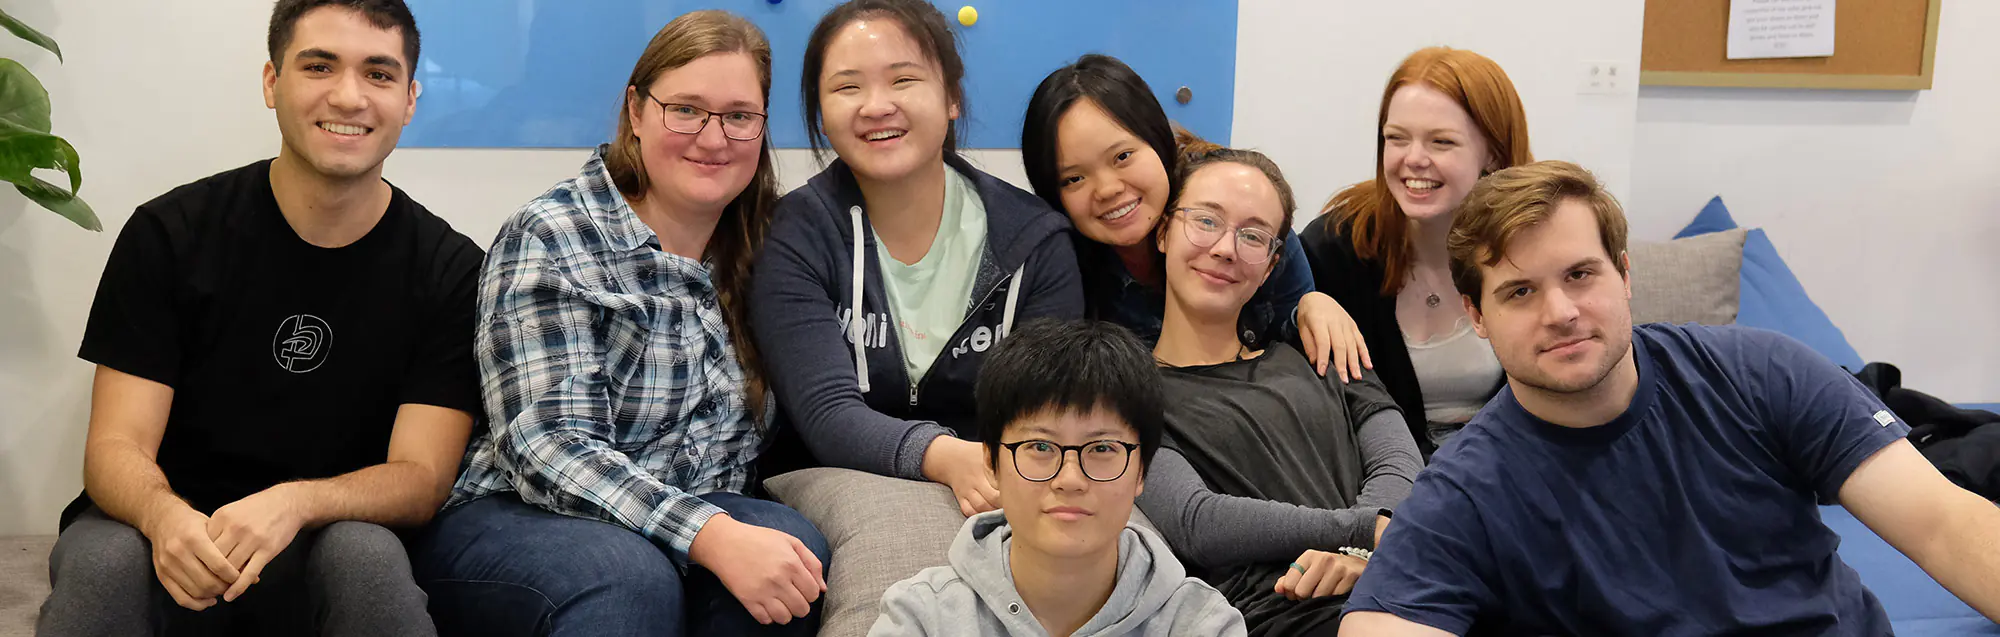 Séjour linguistique pour jeunes, enfants et écoliers de LTL Mandarin School